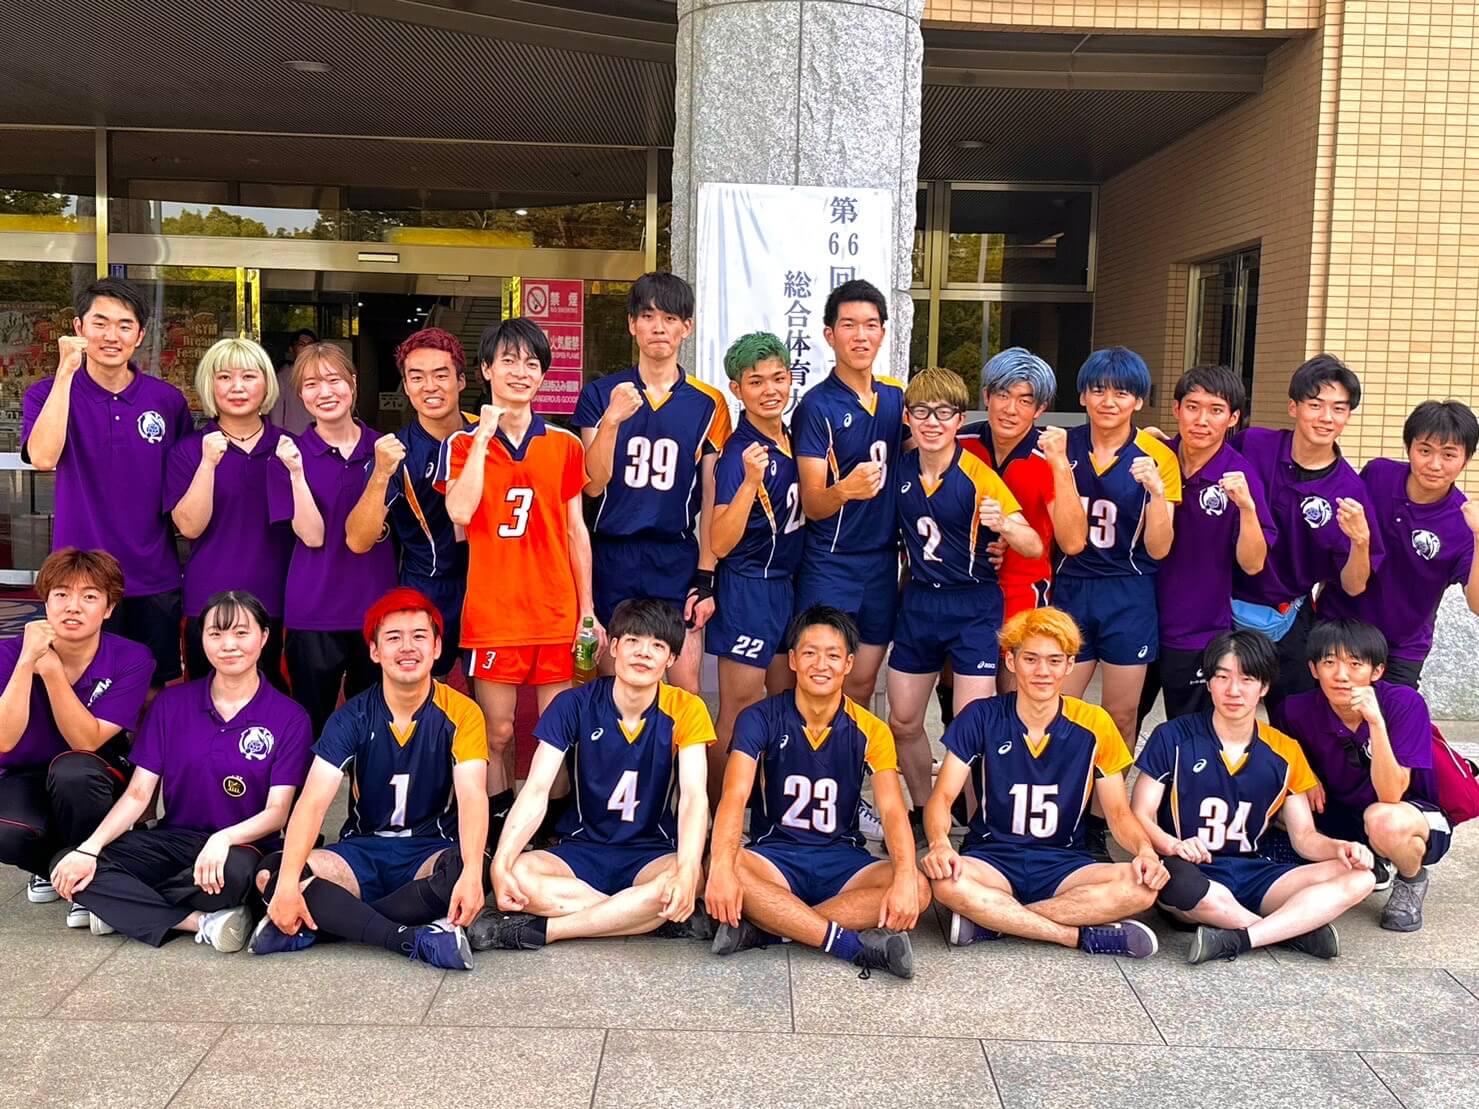 第66回東日本医科学生体育大会 バレーボール競技において、男子バレーボール部が初優勝しました。